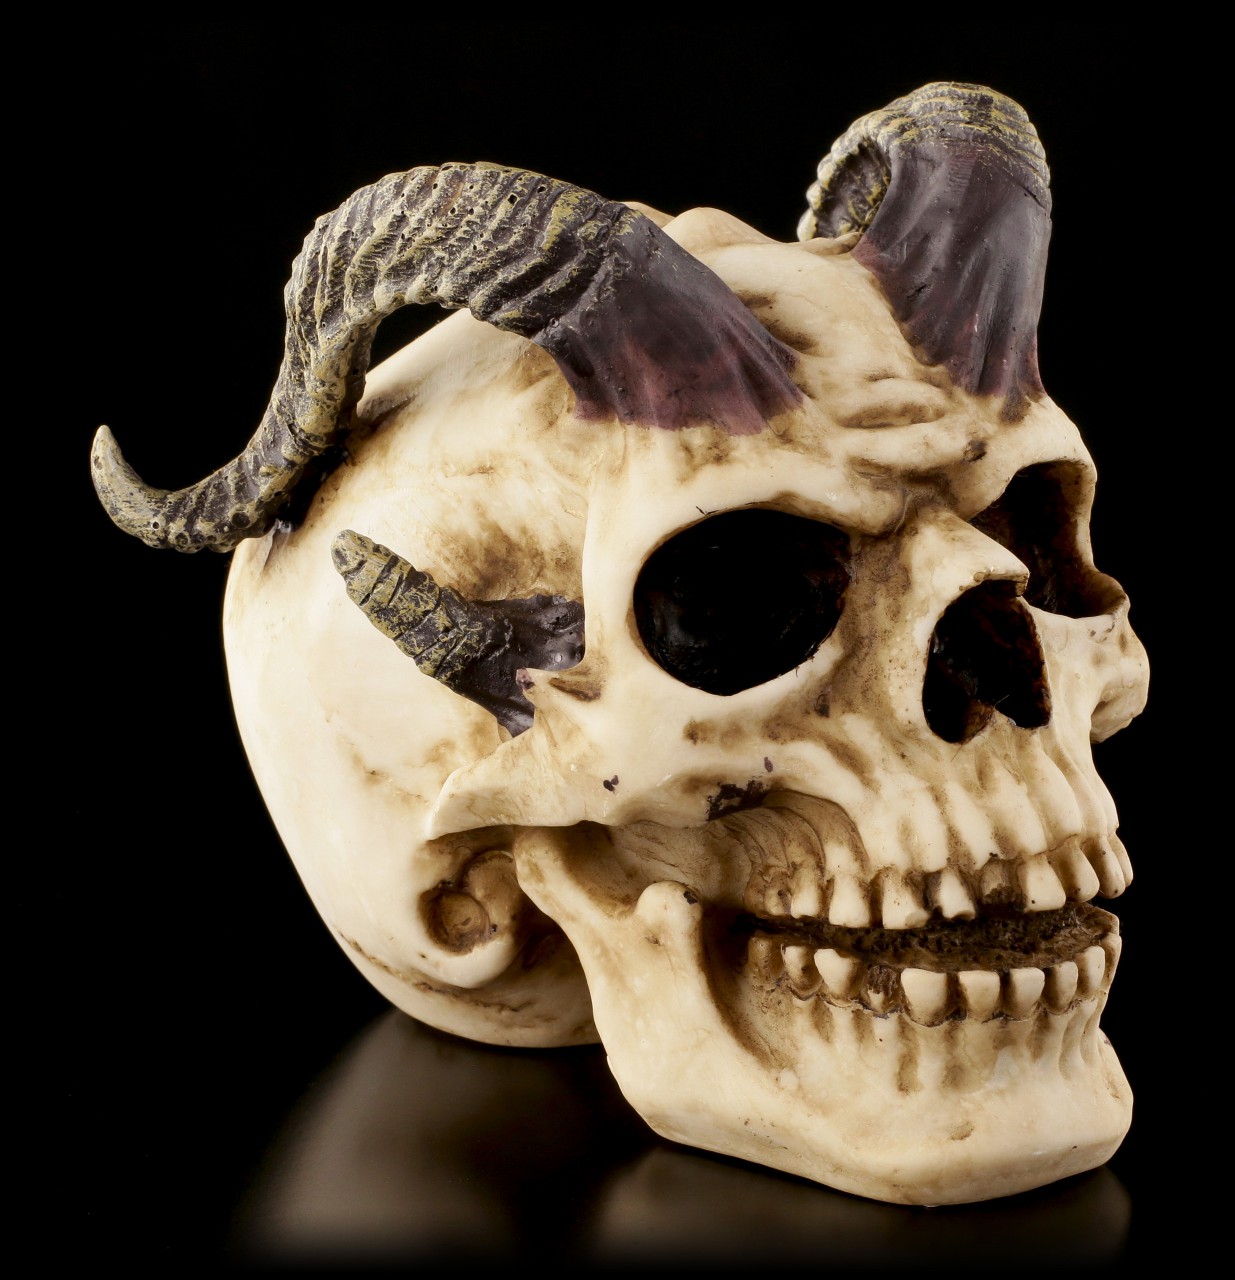 Skull - Horned Devil